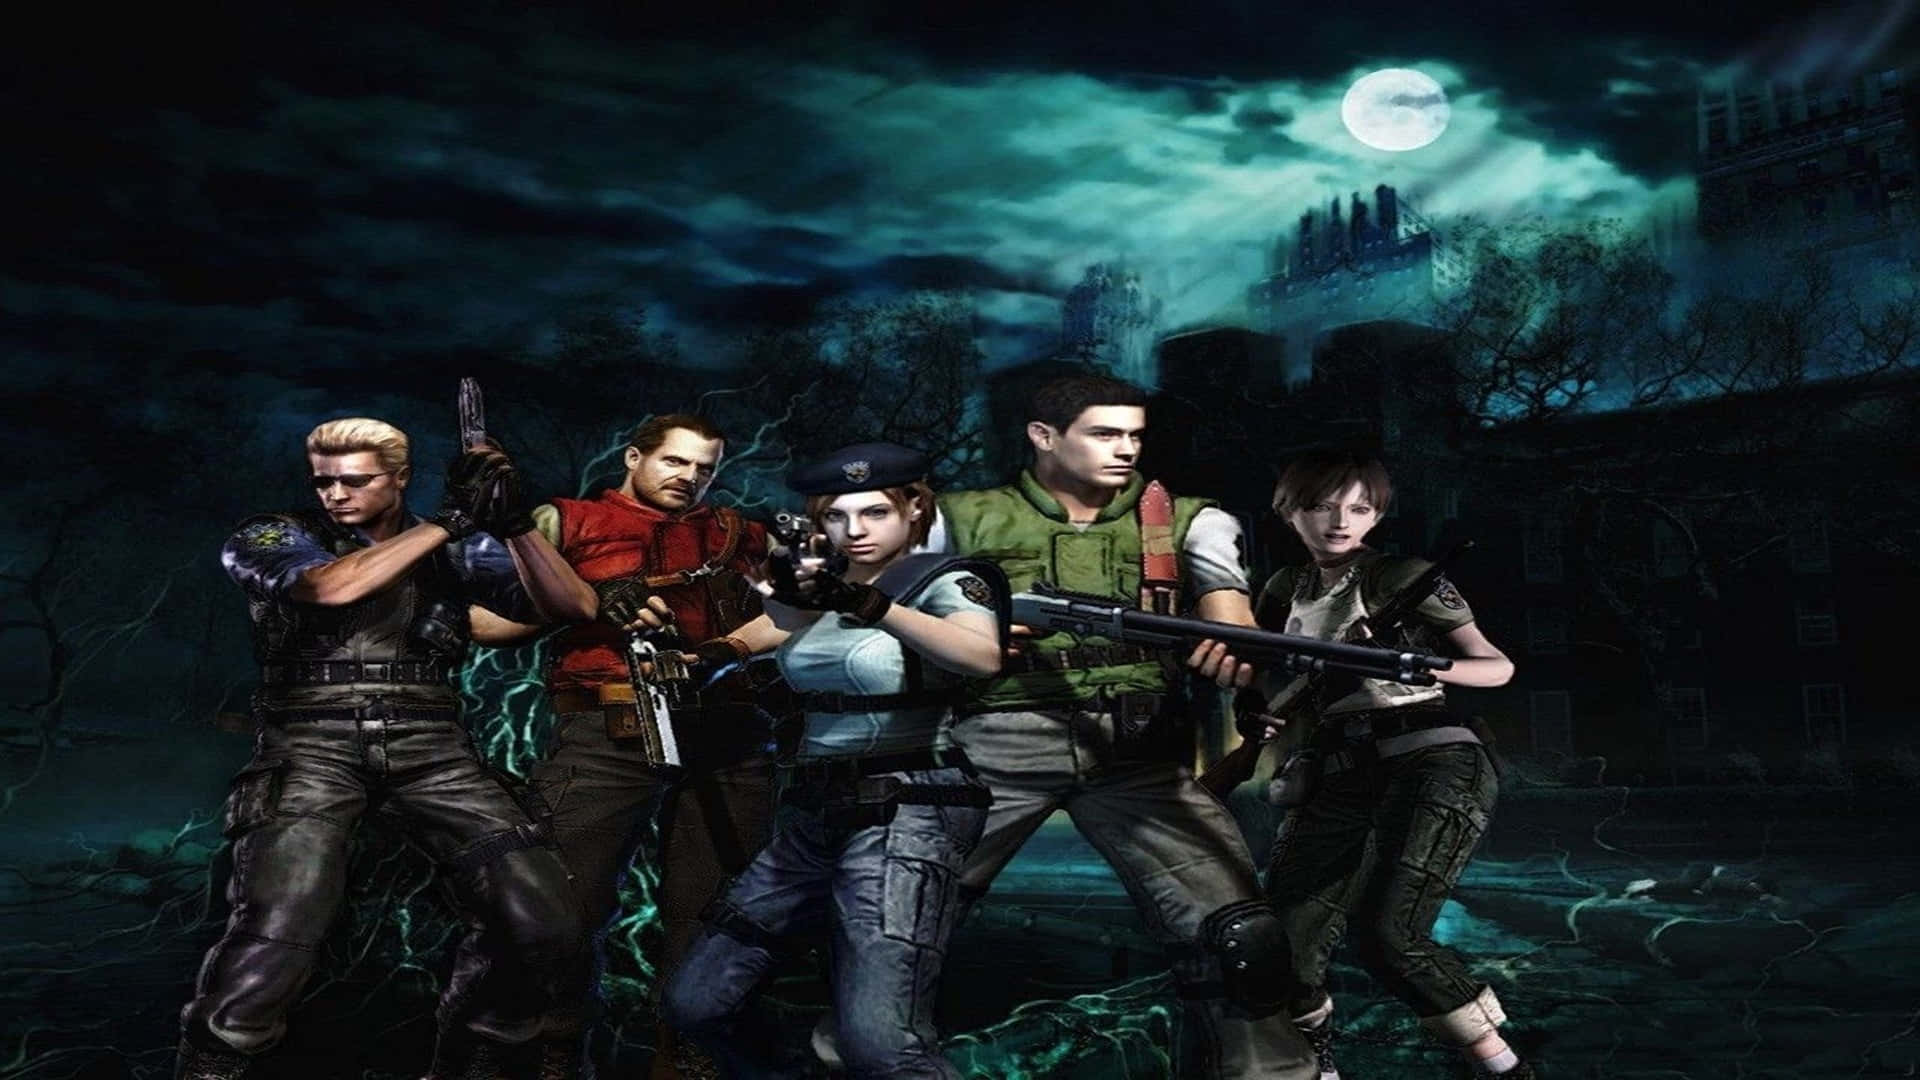 Fondooriginal Del Elenco De Resident Evil 2 En 1920x1080